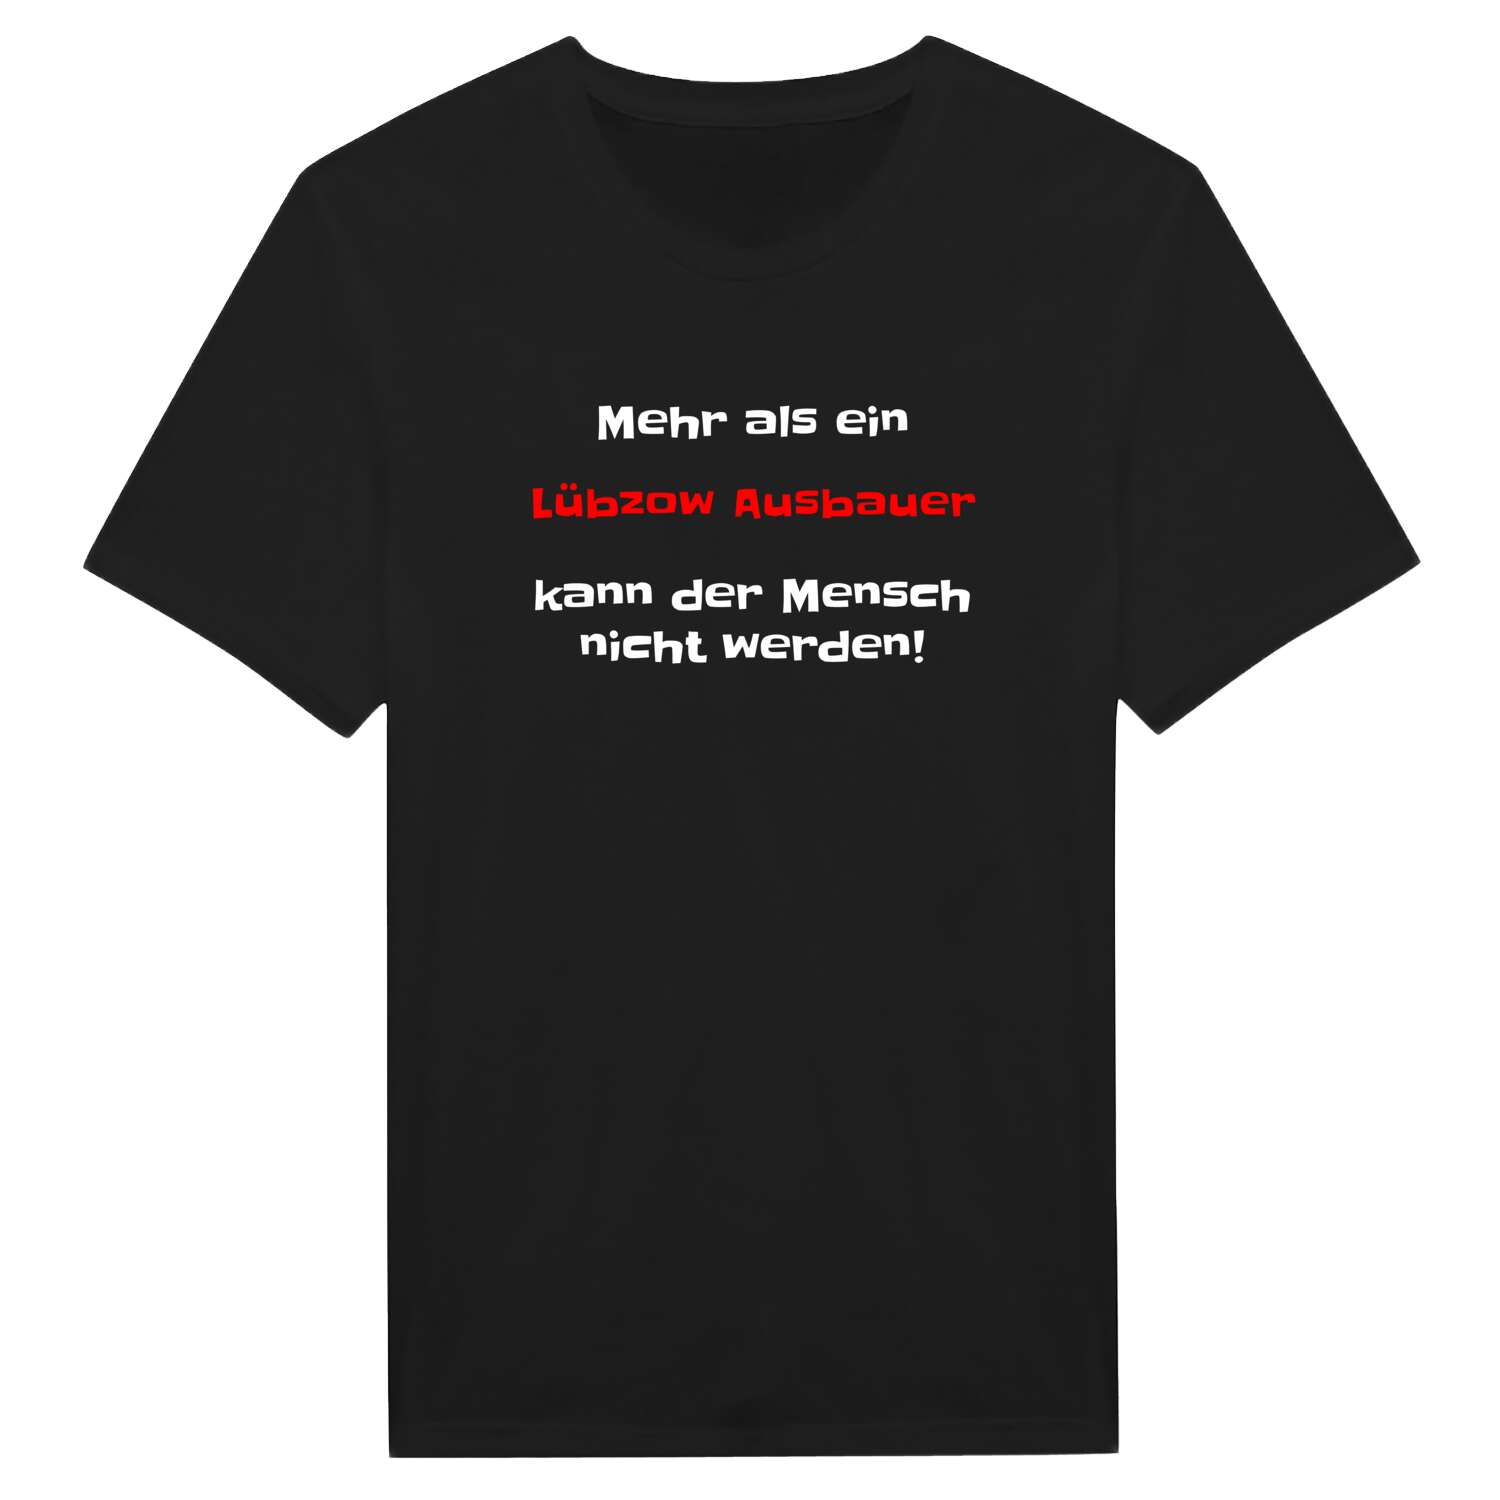 Lübzow Ausbau T-Shirt »Mehr als ein«